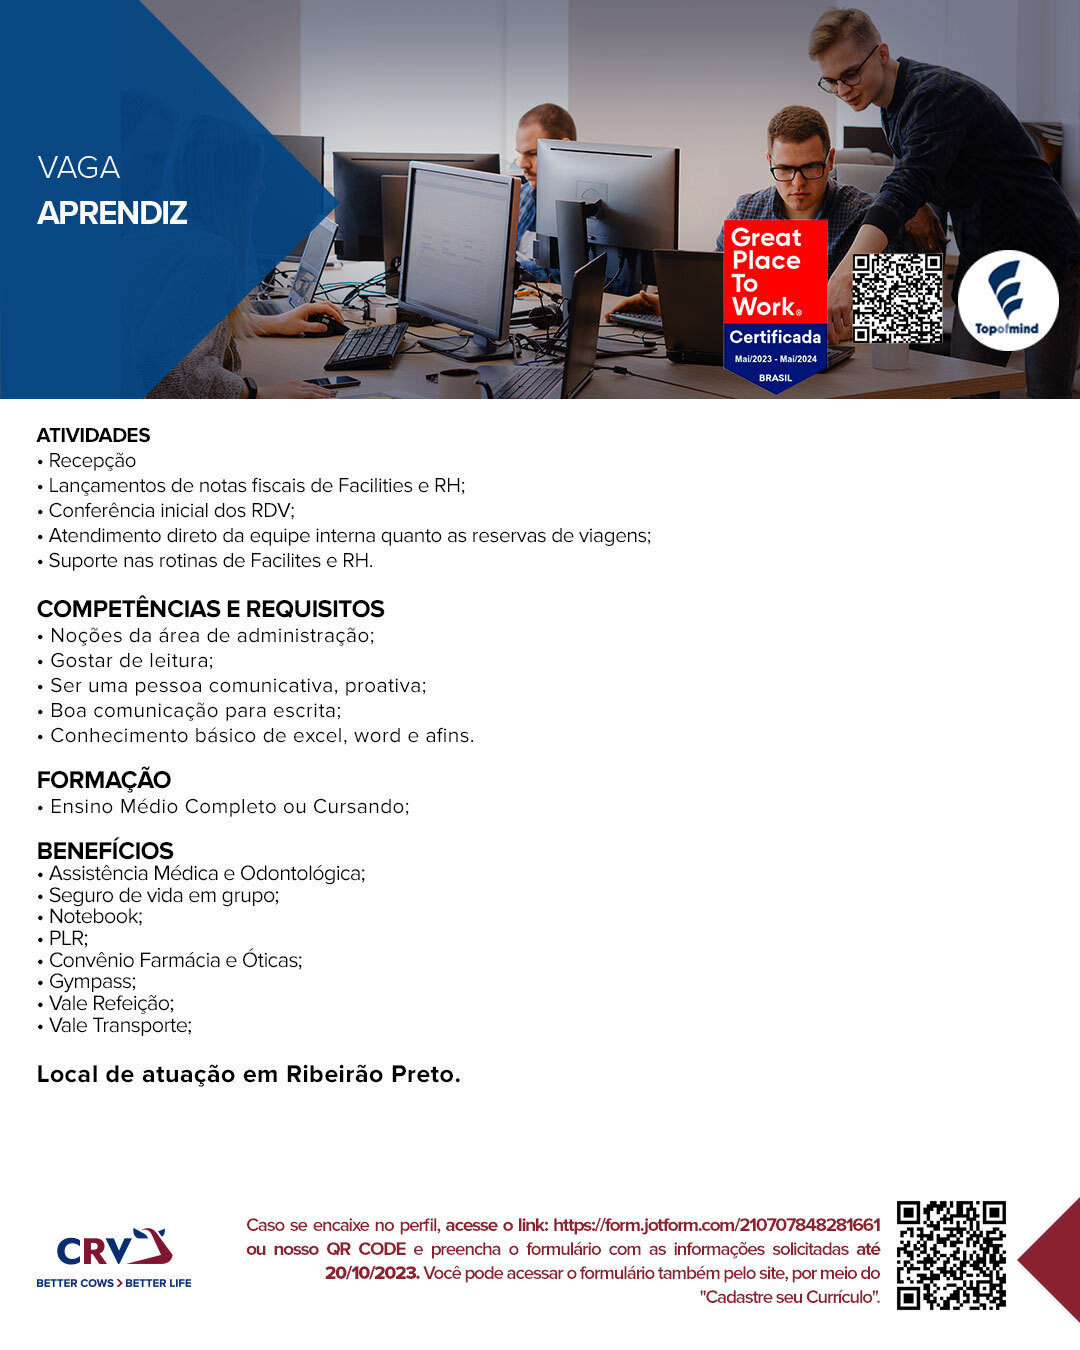 Contrata se auxiliar de pizzaiolo - Vagas de emprego - Iguaçu, Fazenda Rio  Grande 1229875843